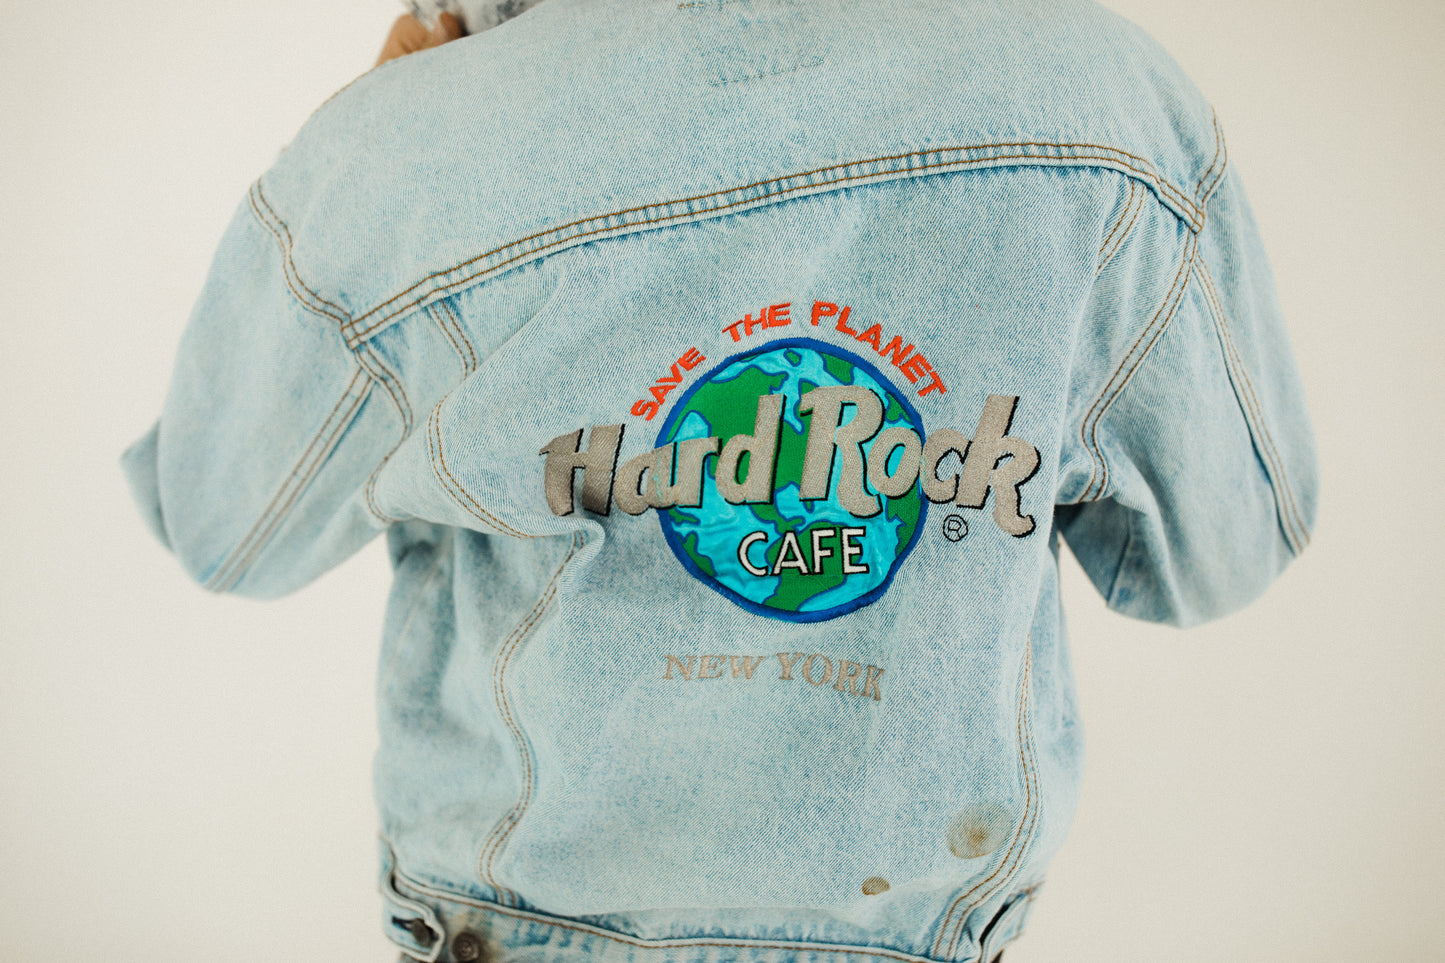 The Hard Rock Jean Jacket